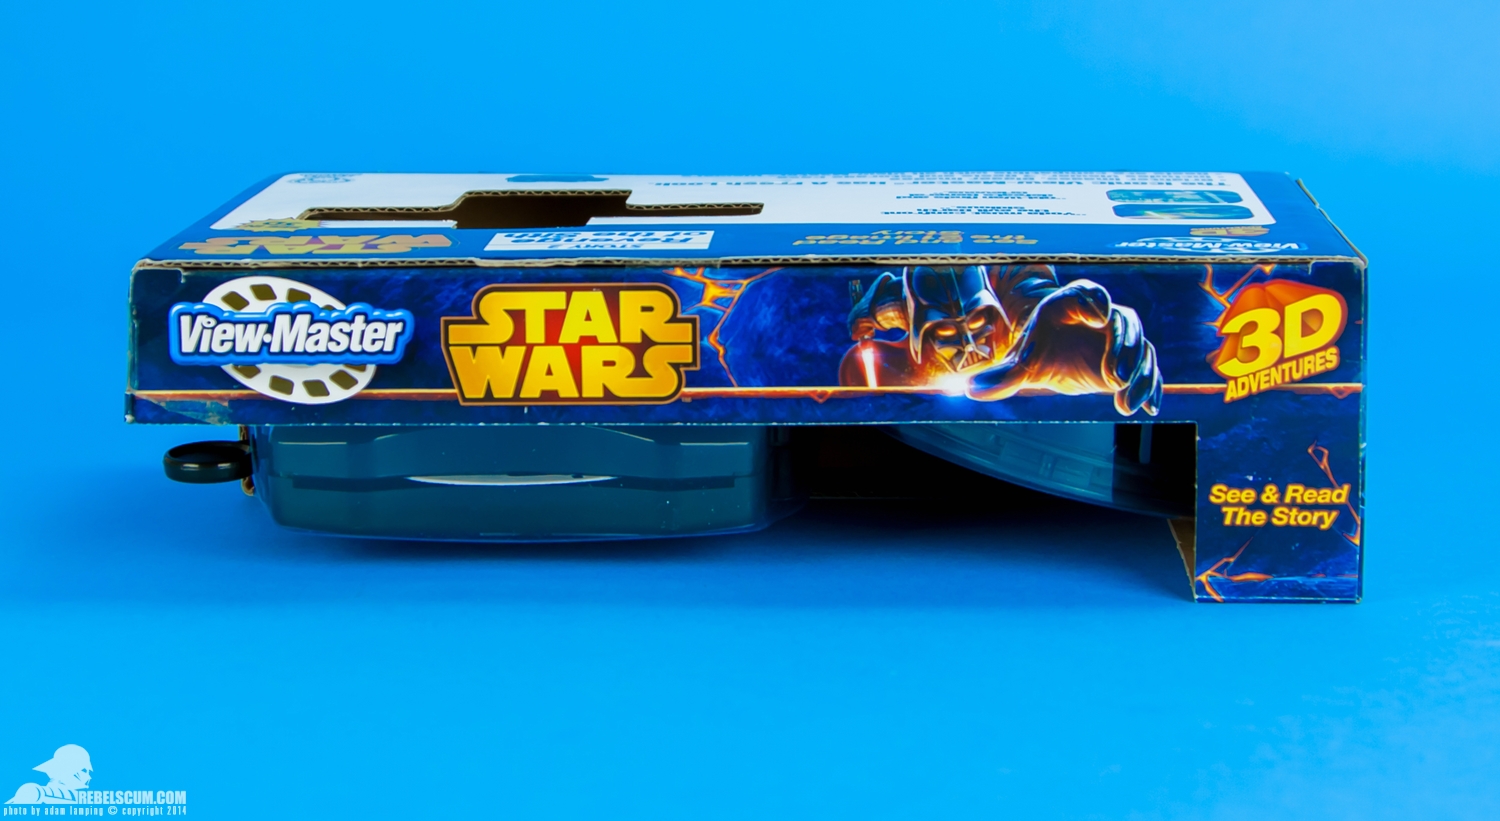 View-Master-Star-Wars-Darth-Vader-3D-Viewer-Gift-Set-017.jpg